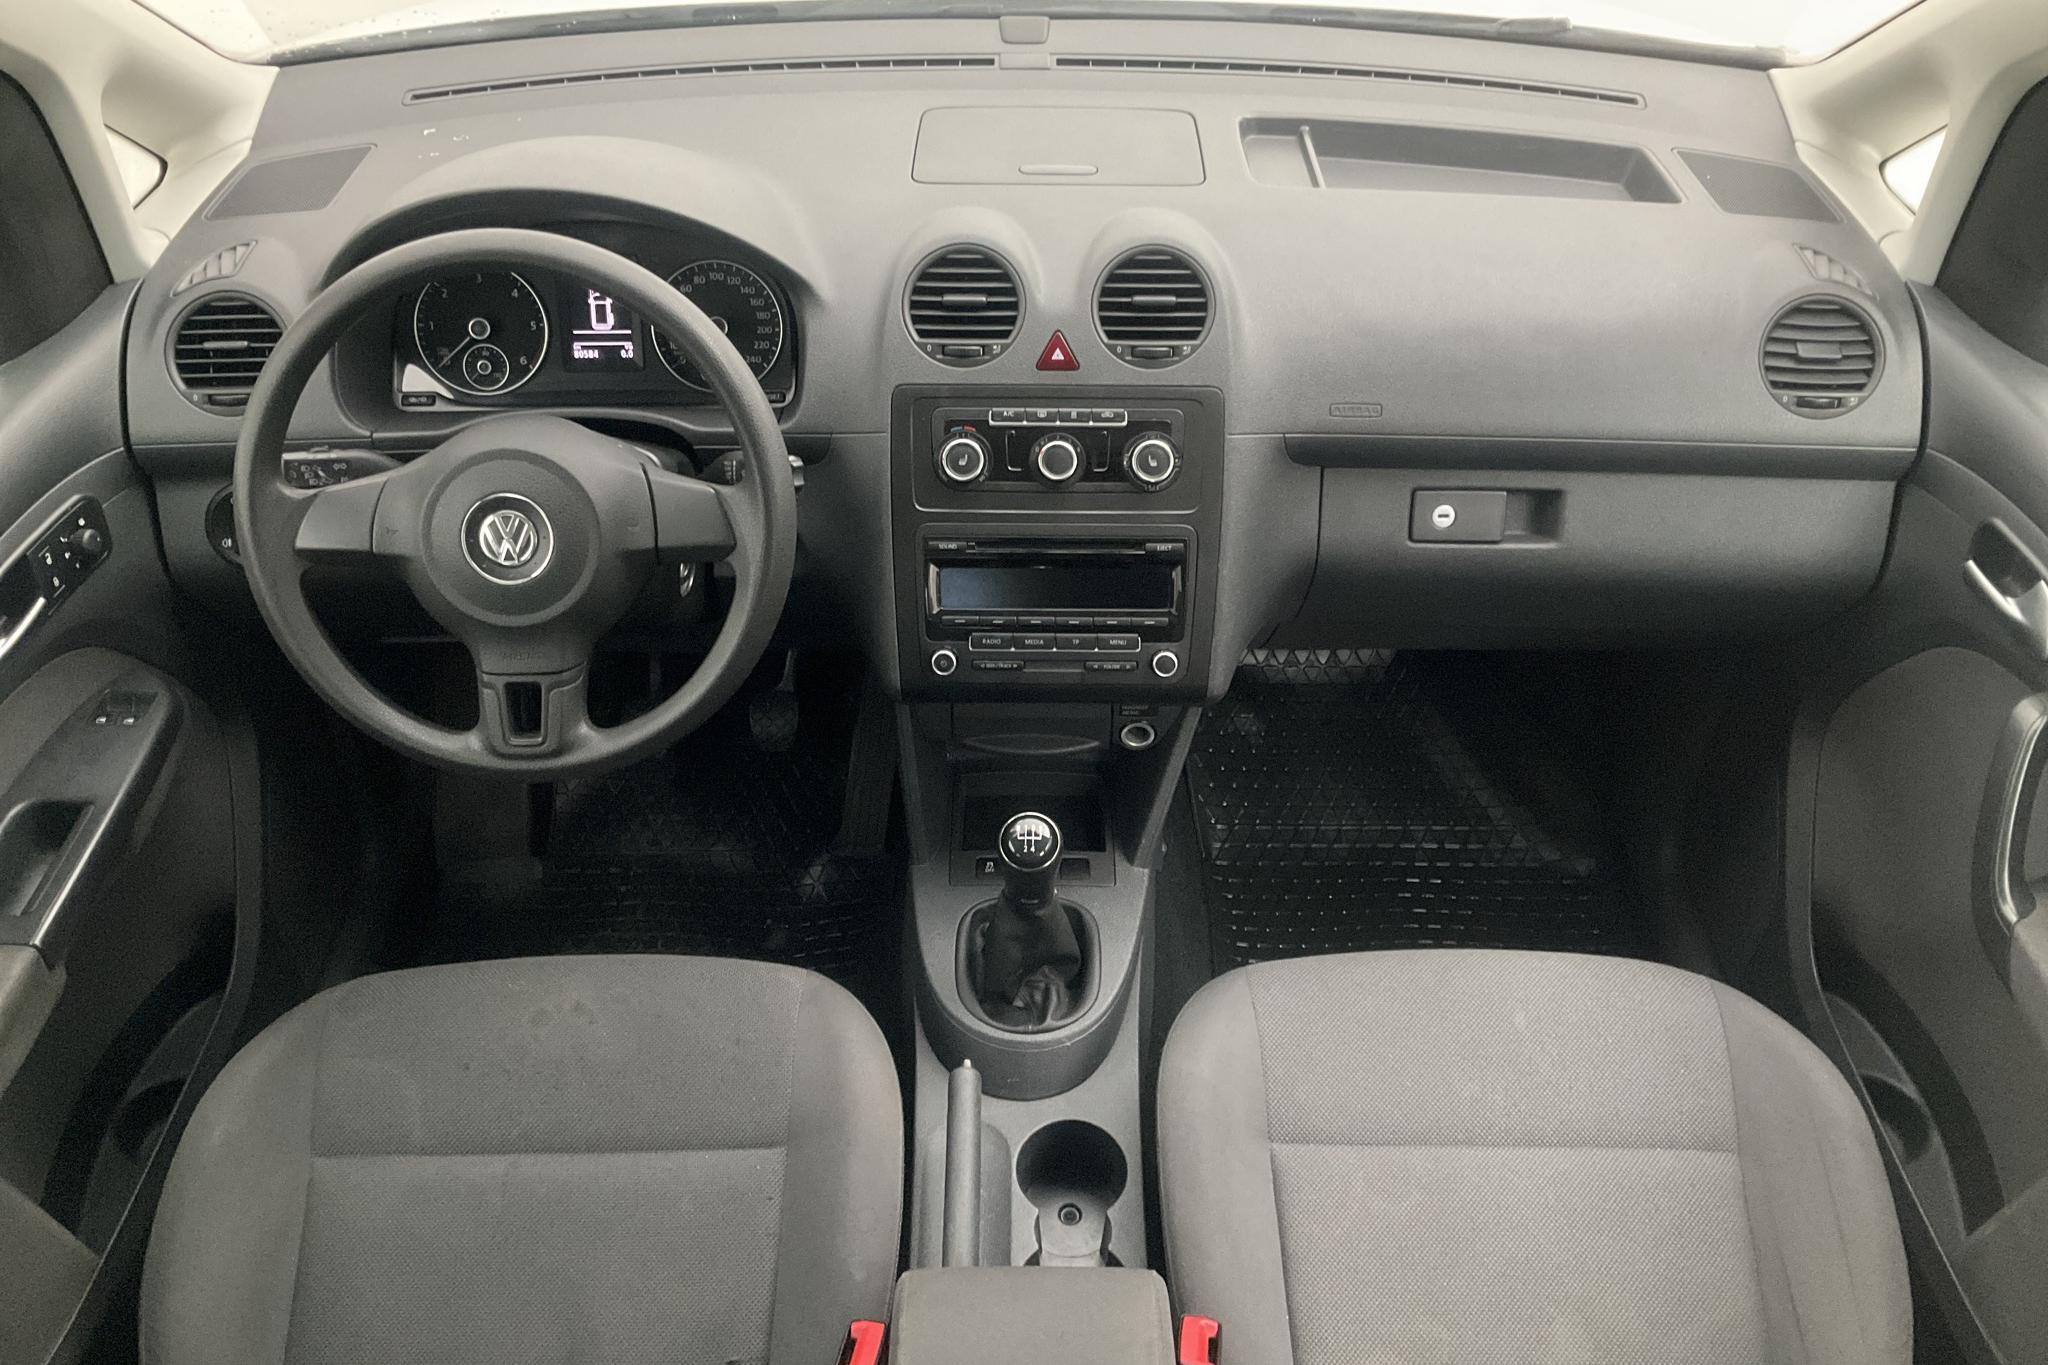 VW Caddy MPV 1.6 TDI (102hk) - 8 059 mil - Manuell - vit - 2014